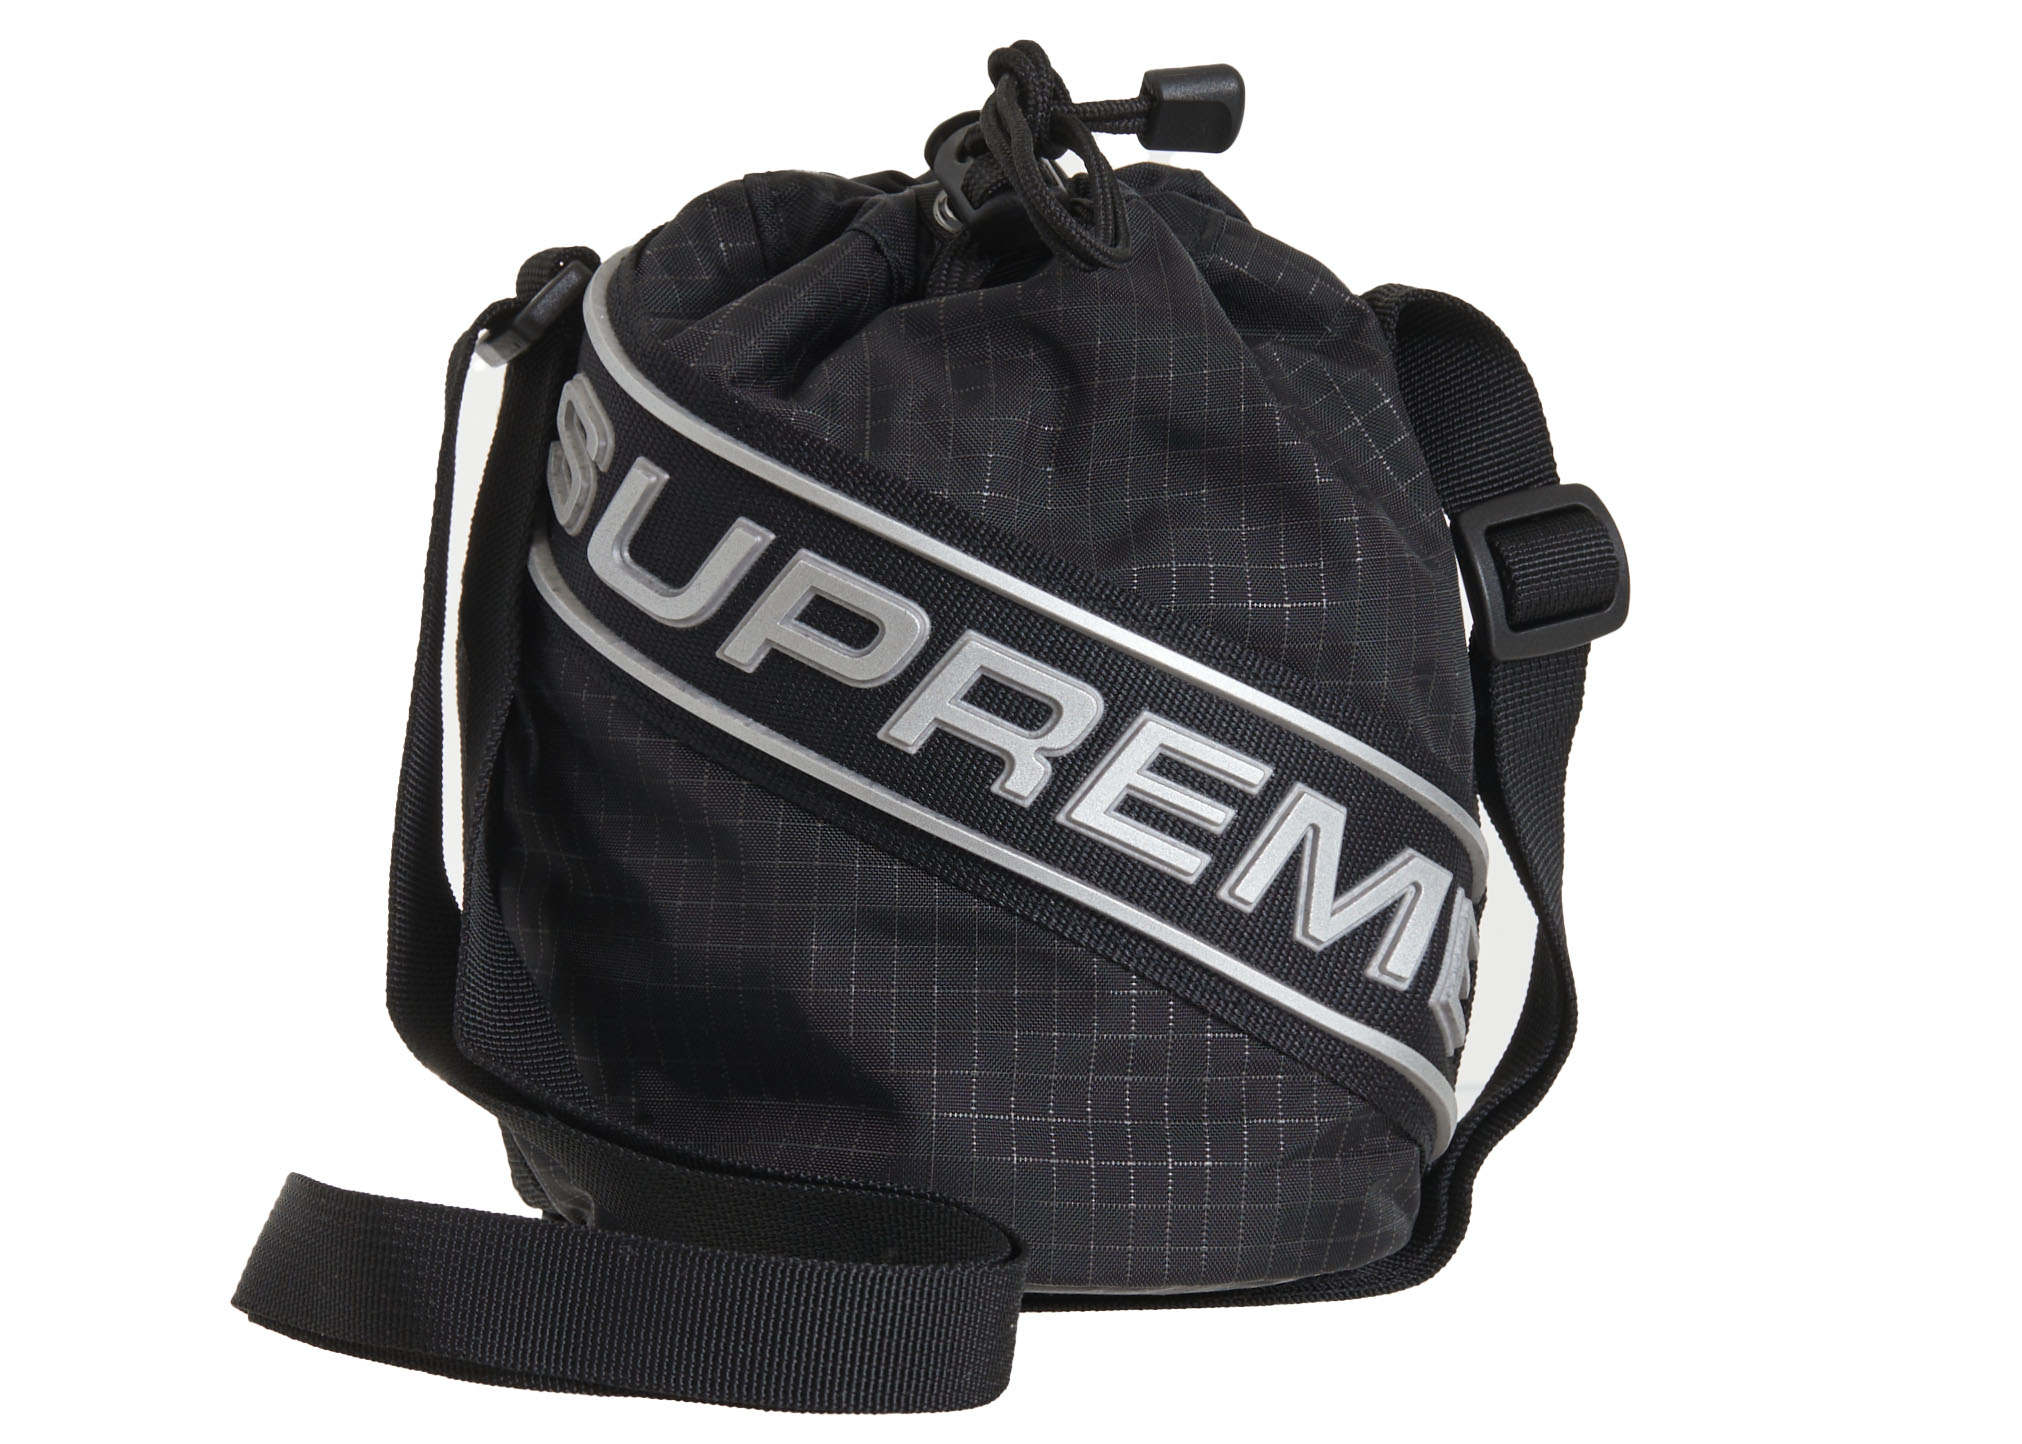 supreme pouch black